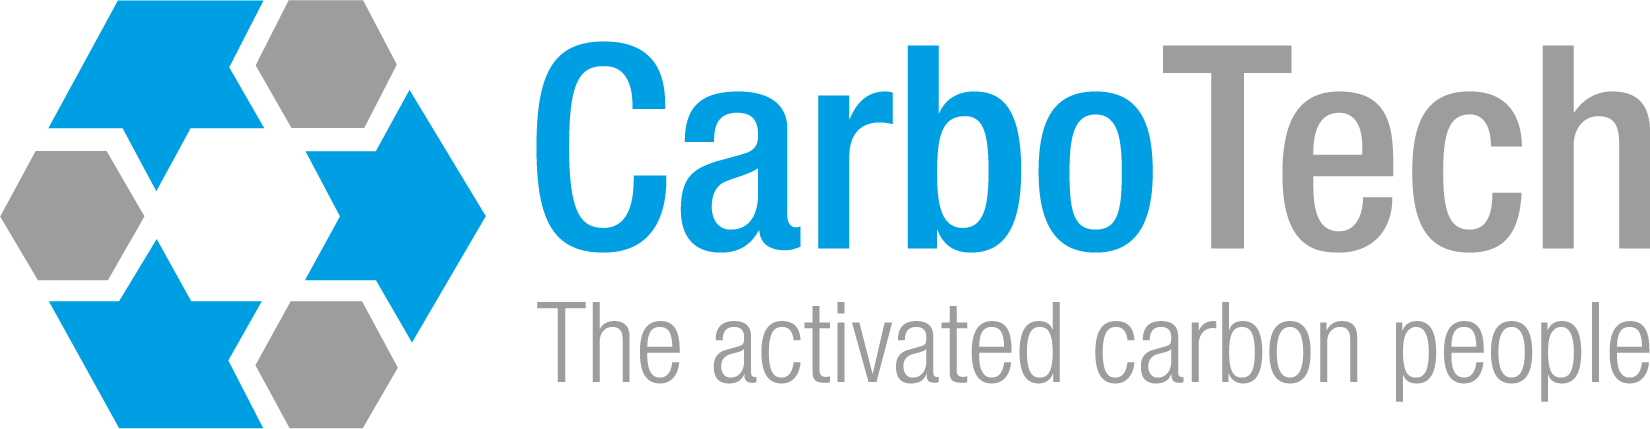 CarboTech-AC_2020.jpg